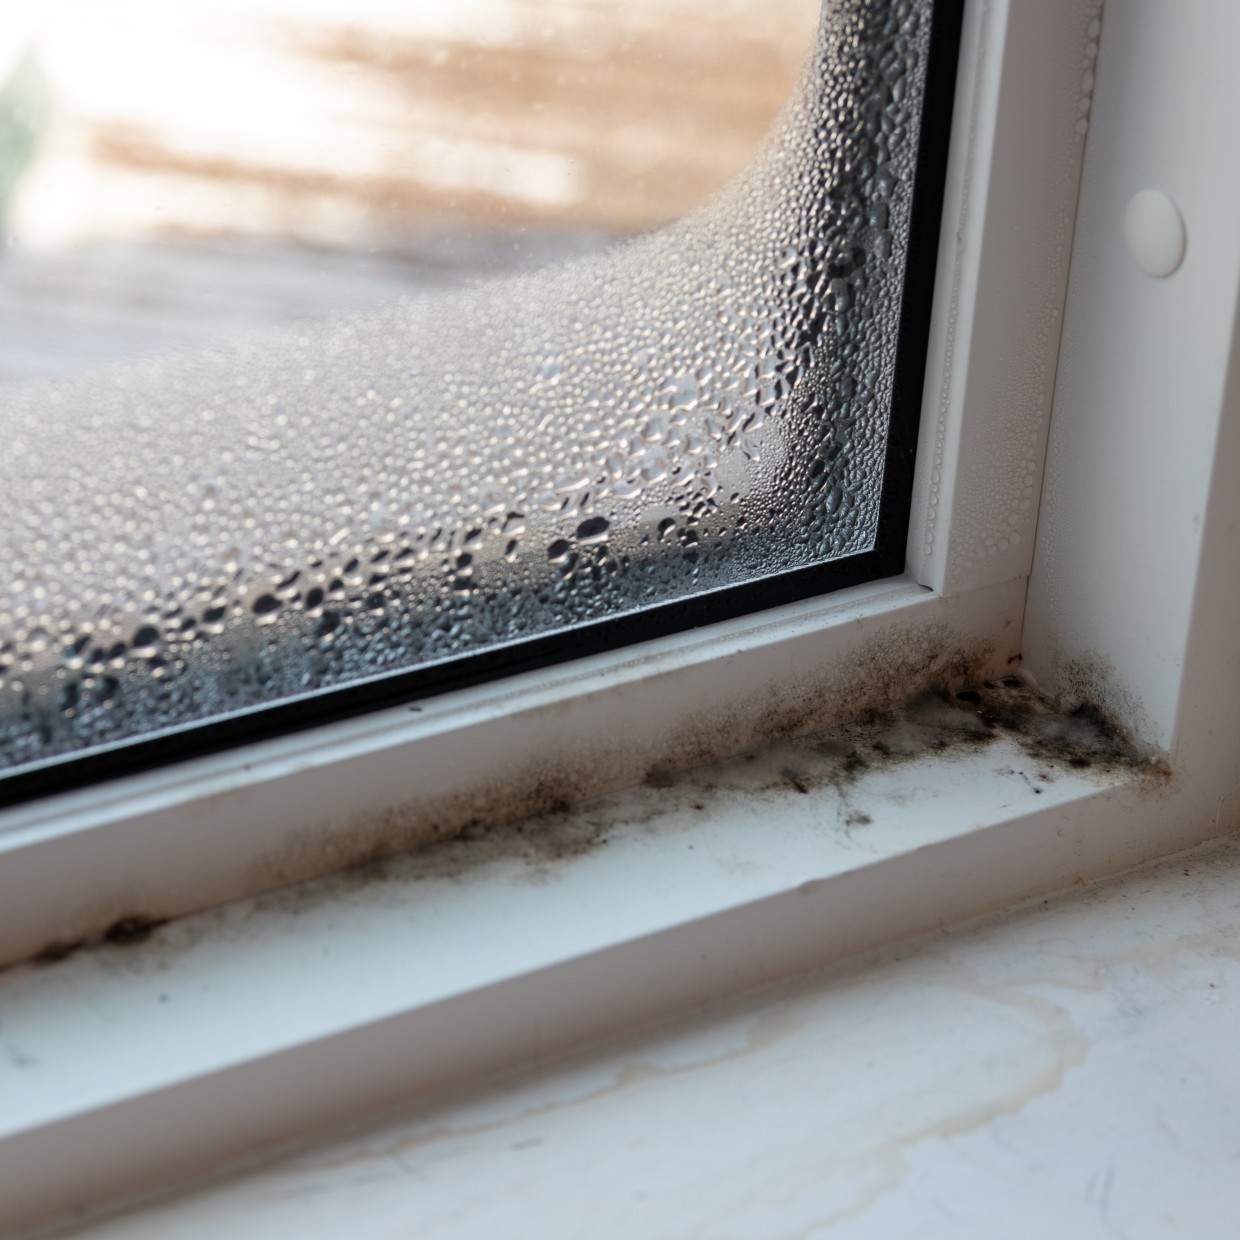  梅雨の「窓の結露」によるカビを予防する方法【知って得する掃除習慣】 